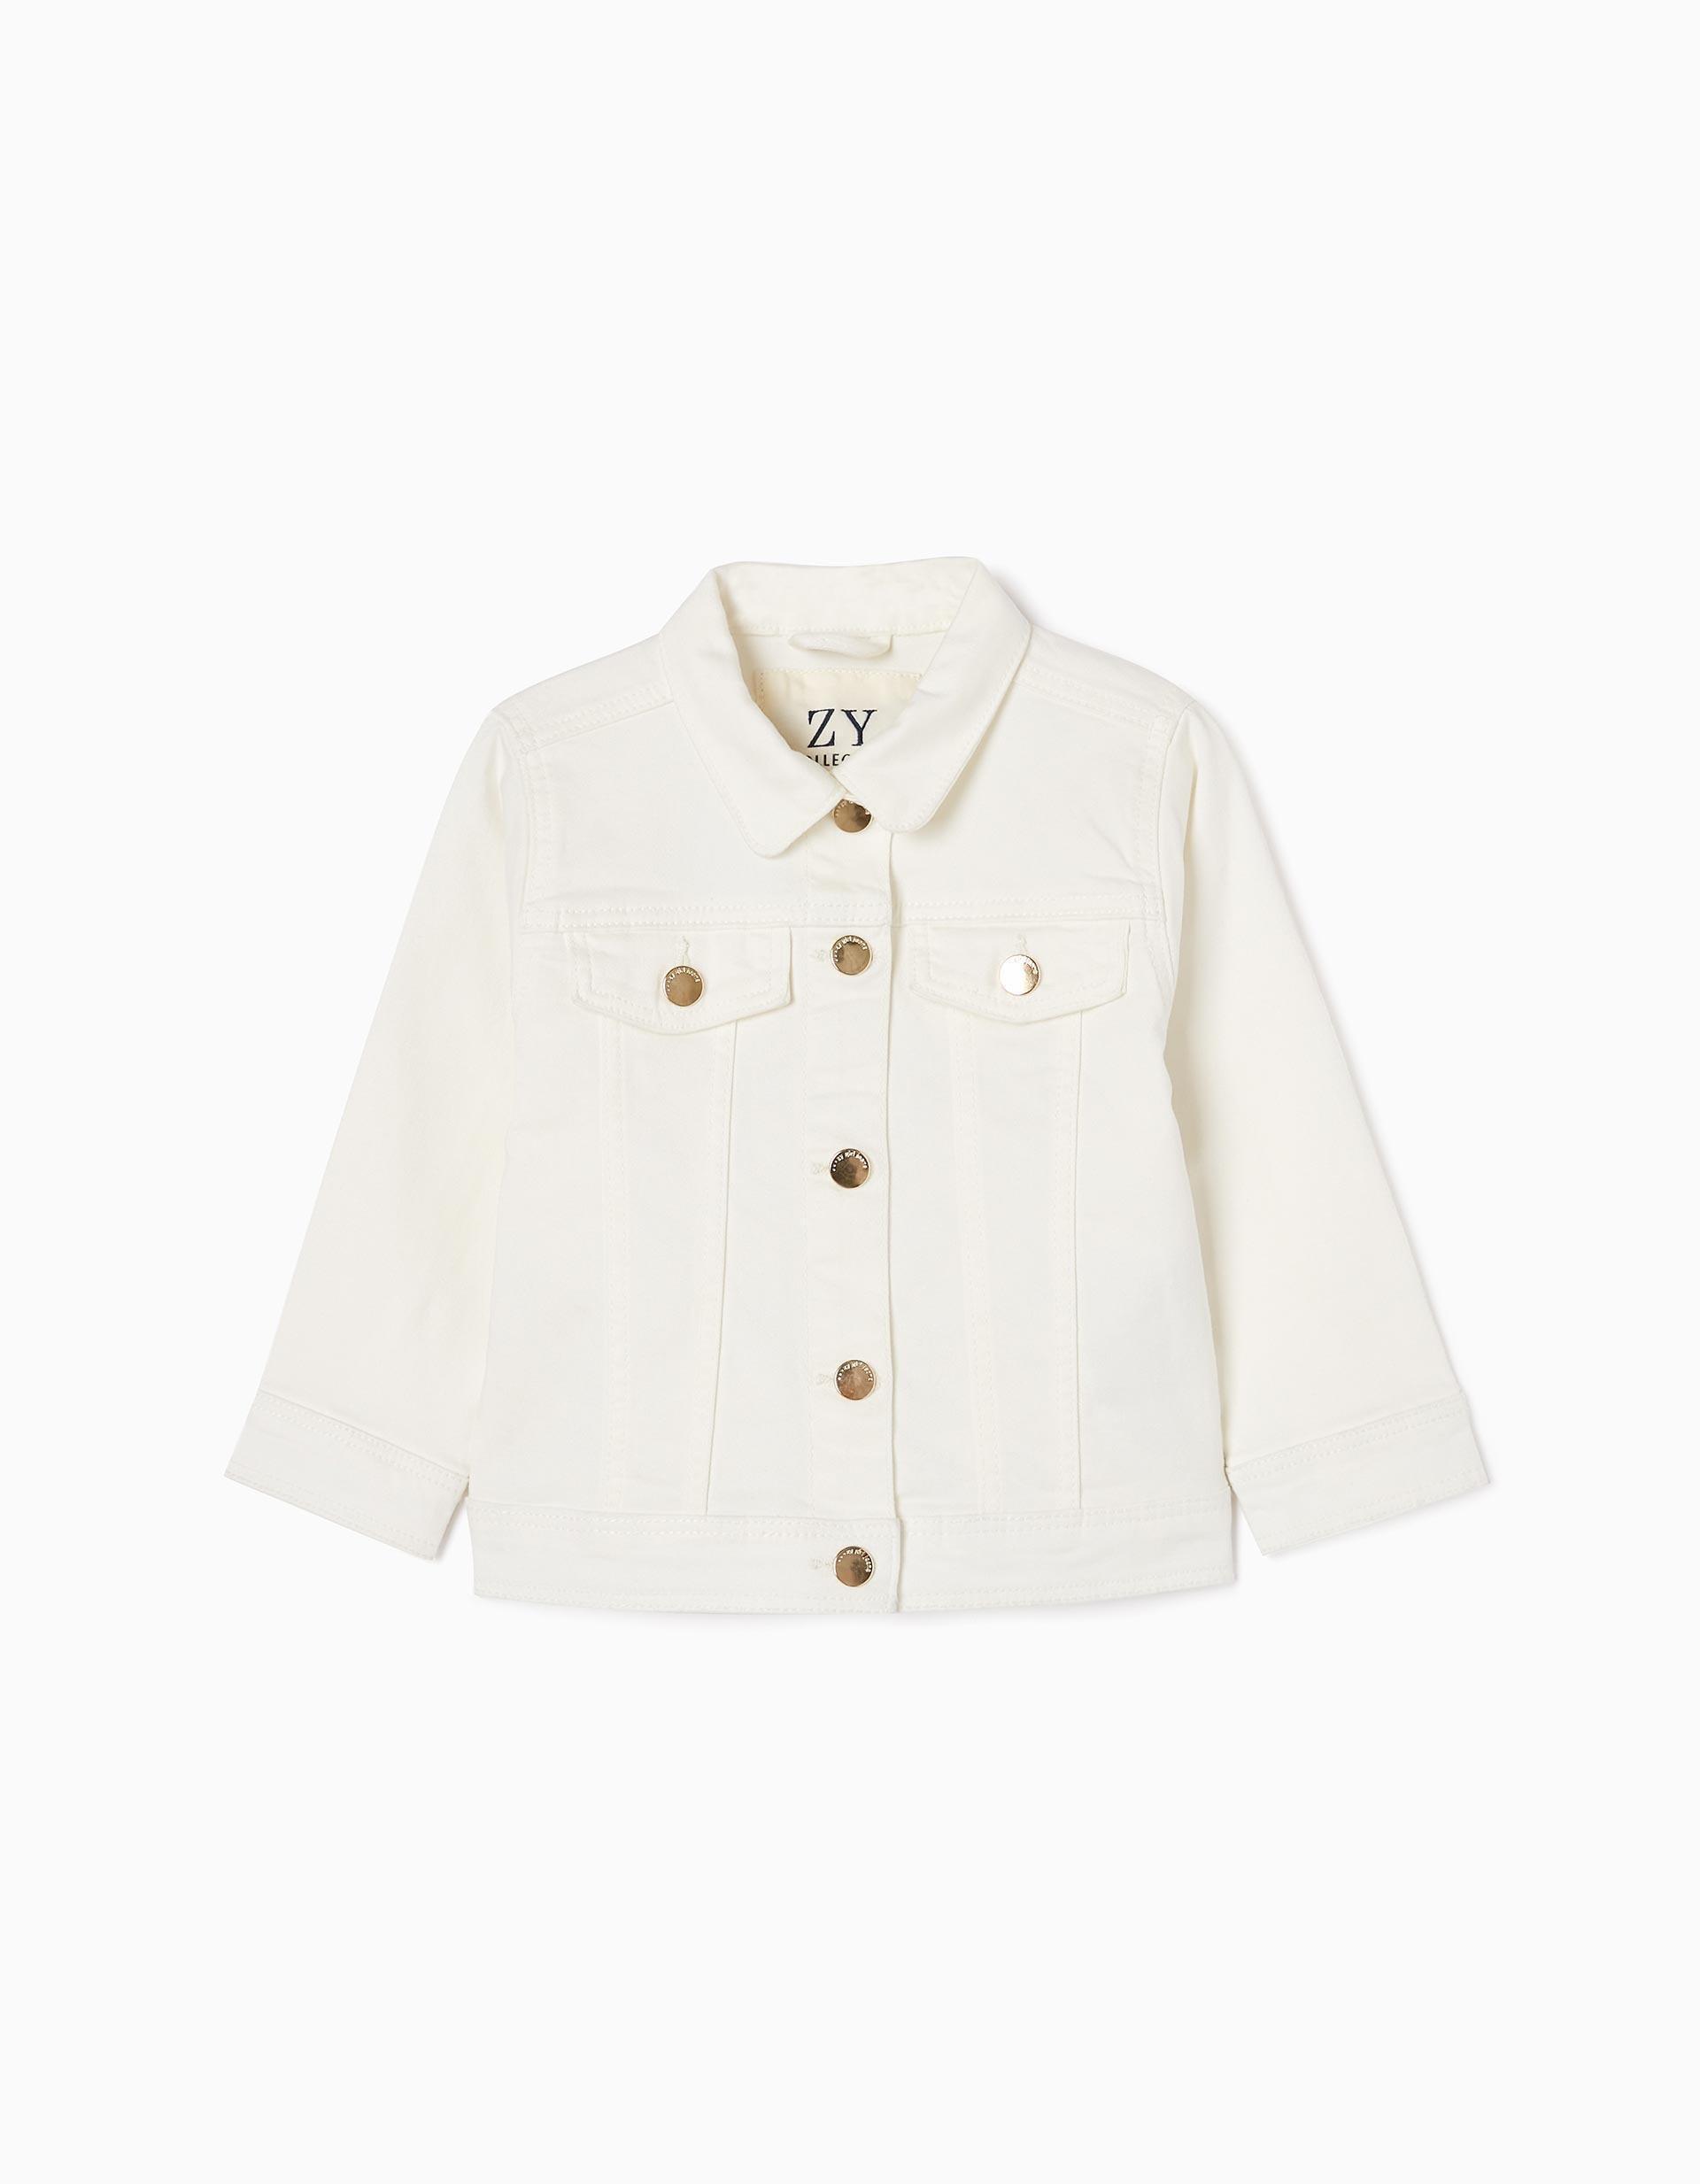 Zippy - White Cotton Denim Jacket, Baby Girls